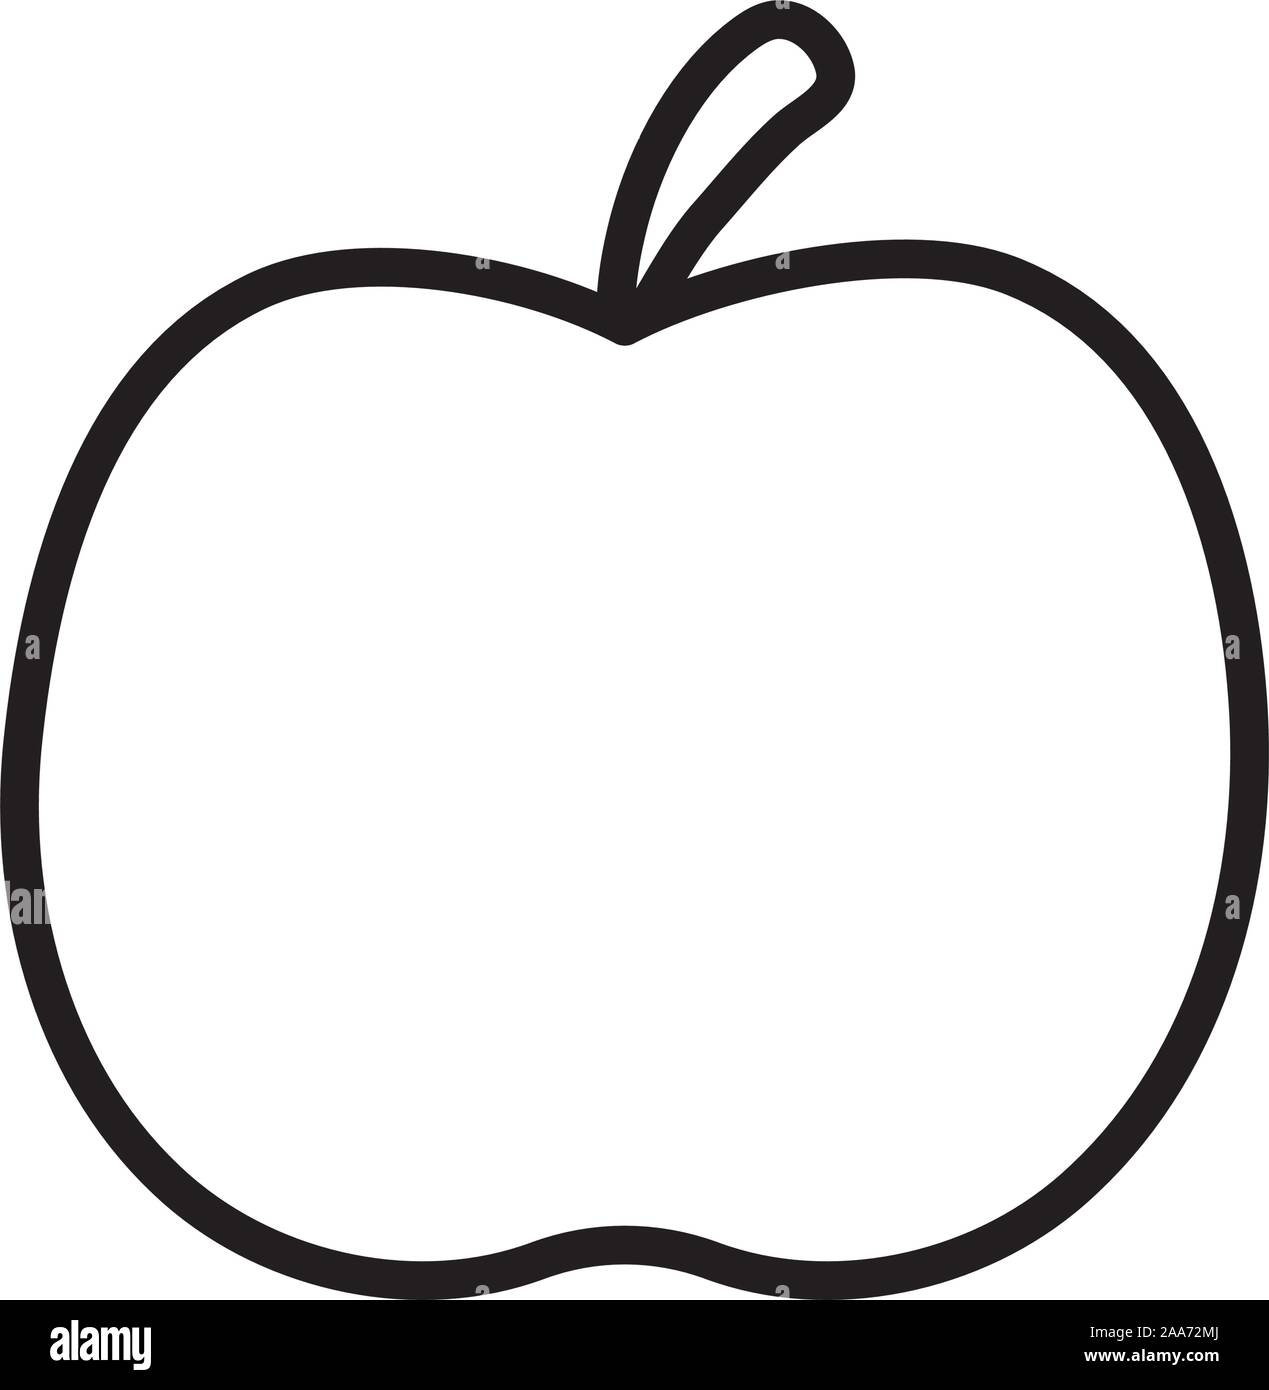 fresh fruit apple on white background vector illustration thick line Stock Vector